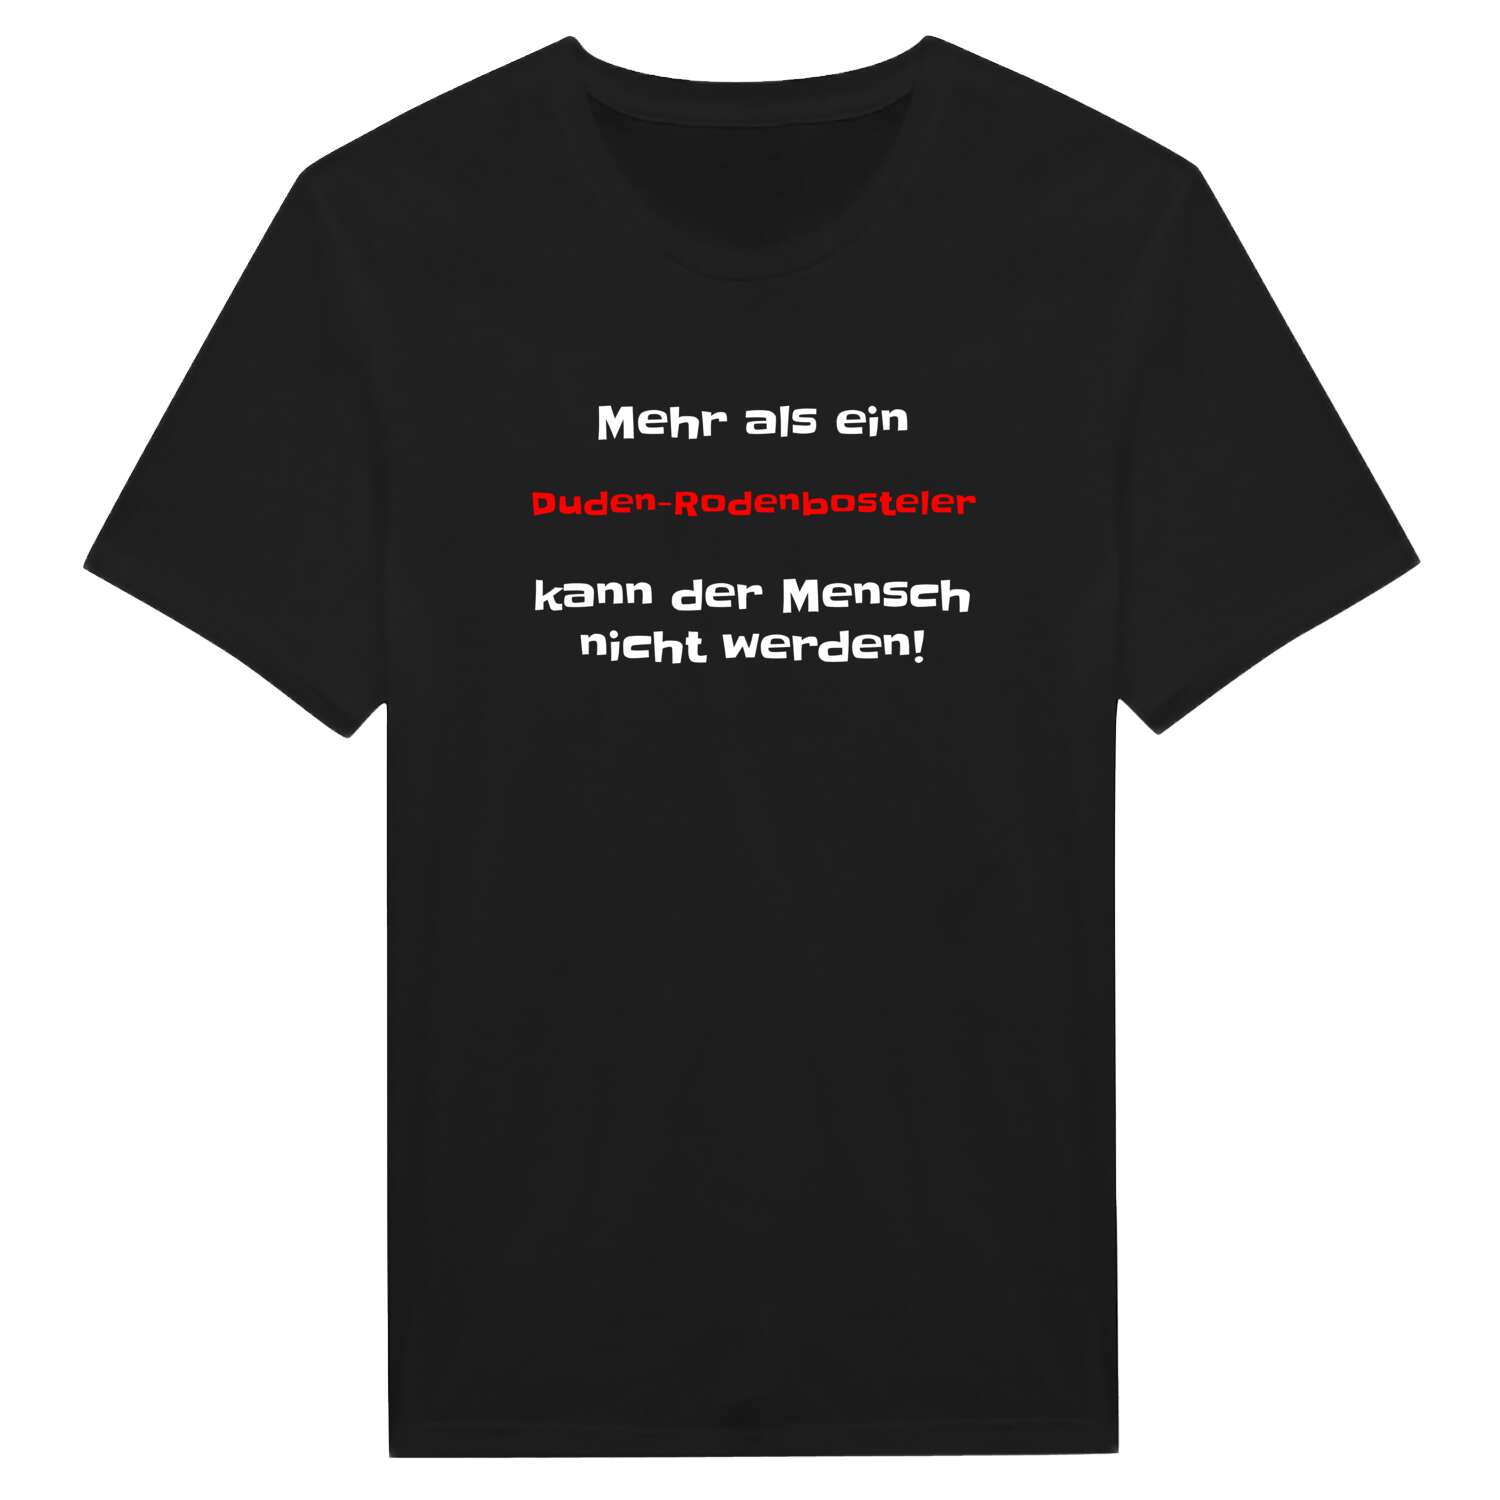 Duden-Rodenbostel T-Shirt »Mehr als ein«